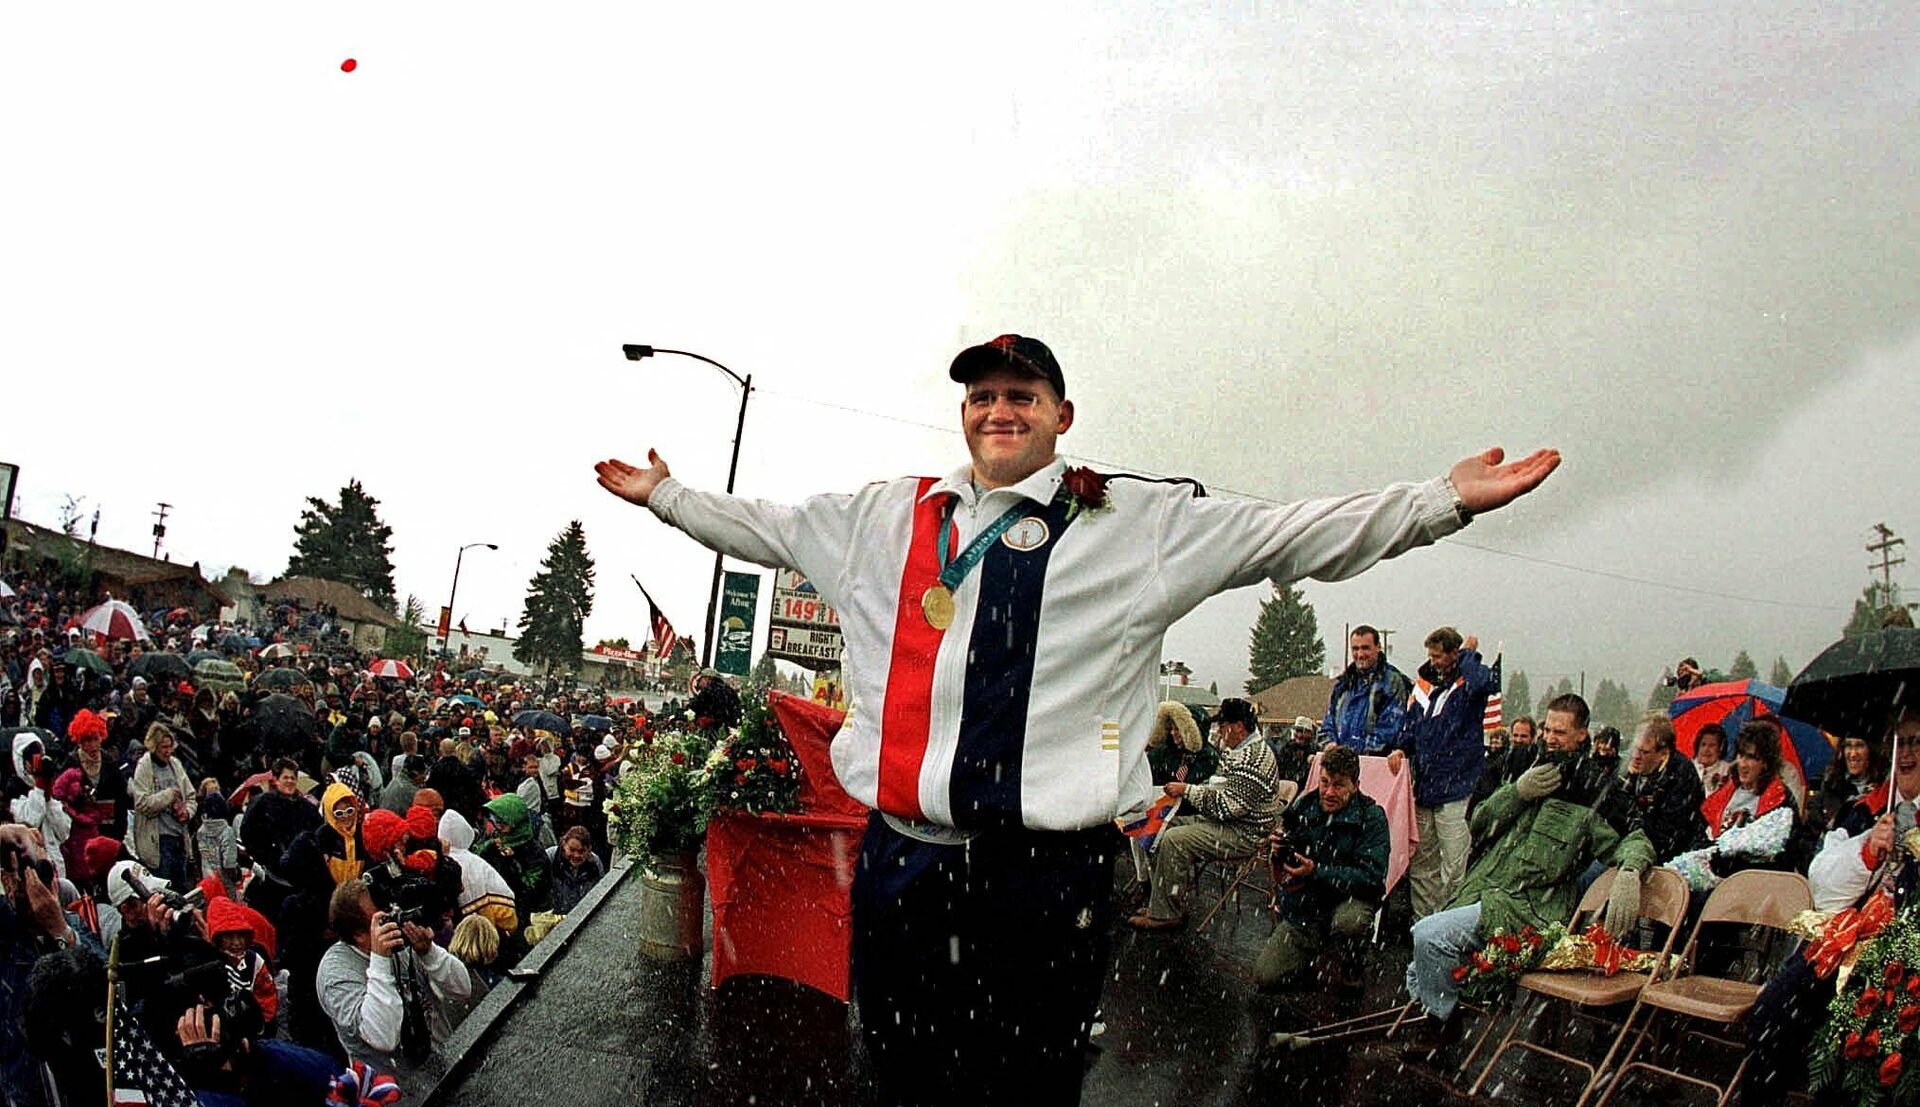 Американский борец Рулон Гарднер на торжественном параде в честь победы на Олимпийских играх 2000 года в Сиднее. - РИА Новости, 1920, 06.10.2021